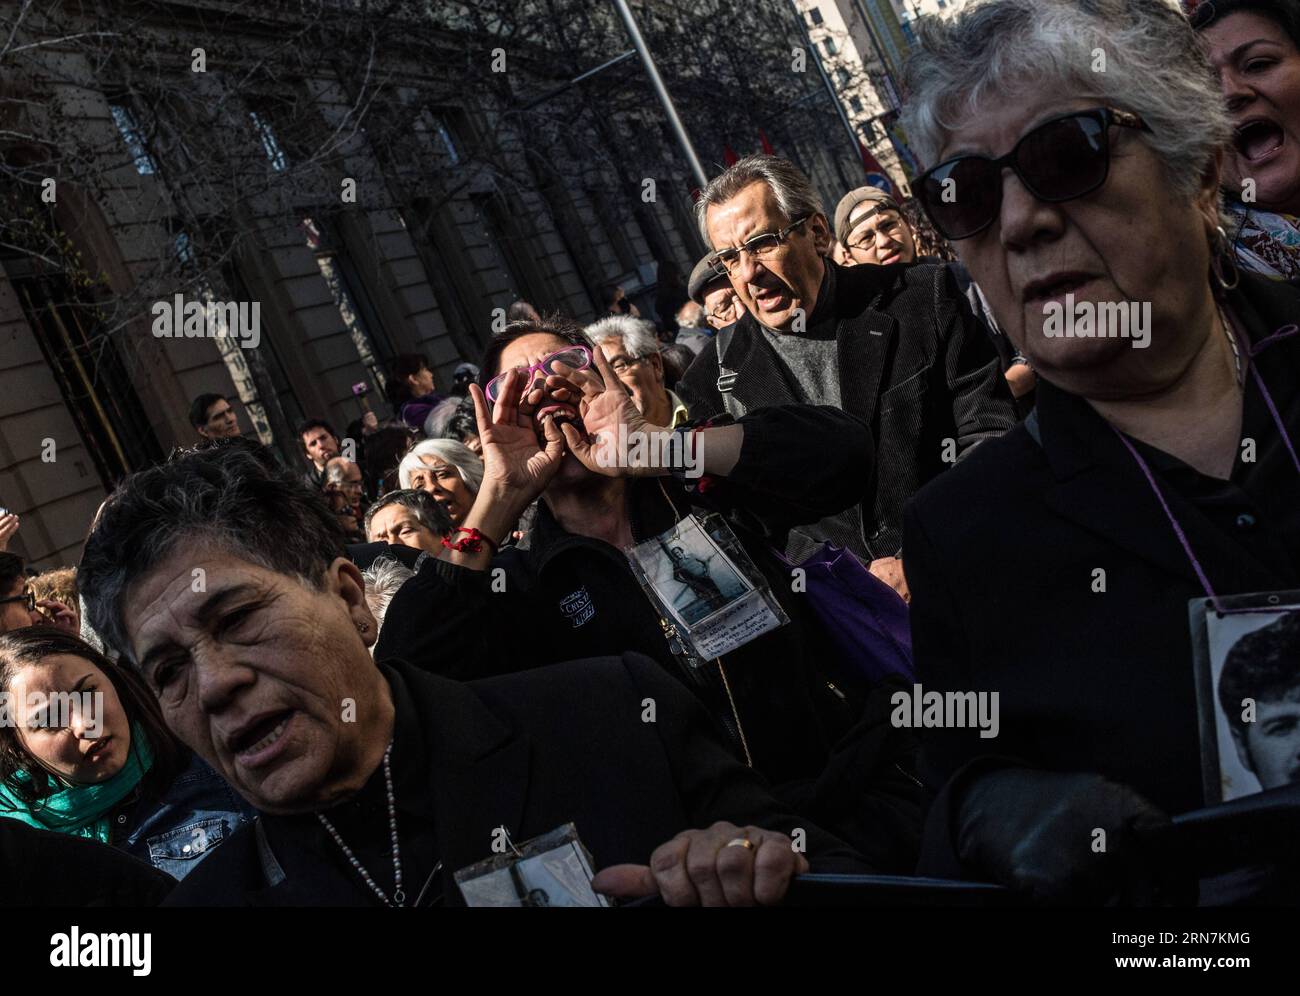 La gente grida gli slogan mentre rendono omaggio all'ex presidente Salvador Allende e commemorano il 42 ° anniversario del colpo di stato militare lanciato da Augusto Pinochet, di fronte alla porta di via Morande 80 del Palazzo la Moneda, a Santiago, capitale del Cile, l'11 settembre 2015. Jorge Villegas) (jg) CILE-SANTIAGO-COMMEMORAZIONE-ALLENDE e JORGExVILLEGAS PUBLICATIONxNOTxINxCHN celebrità gridano gli slogan che rendono omaggio all'ex presidente Salvador Allende e commemorano il 42 ° anniversario del colpo di stato militare lanciato da Augusto Pinochet di fronte alla porta di via 80 di la Moneda Palac Foto Stock